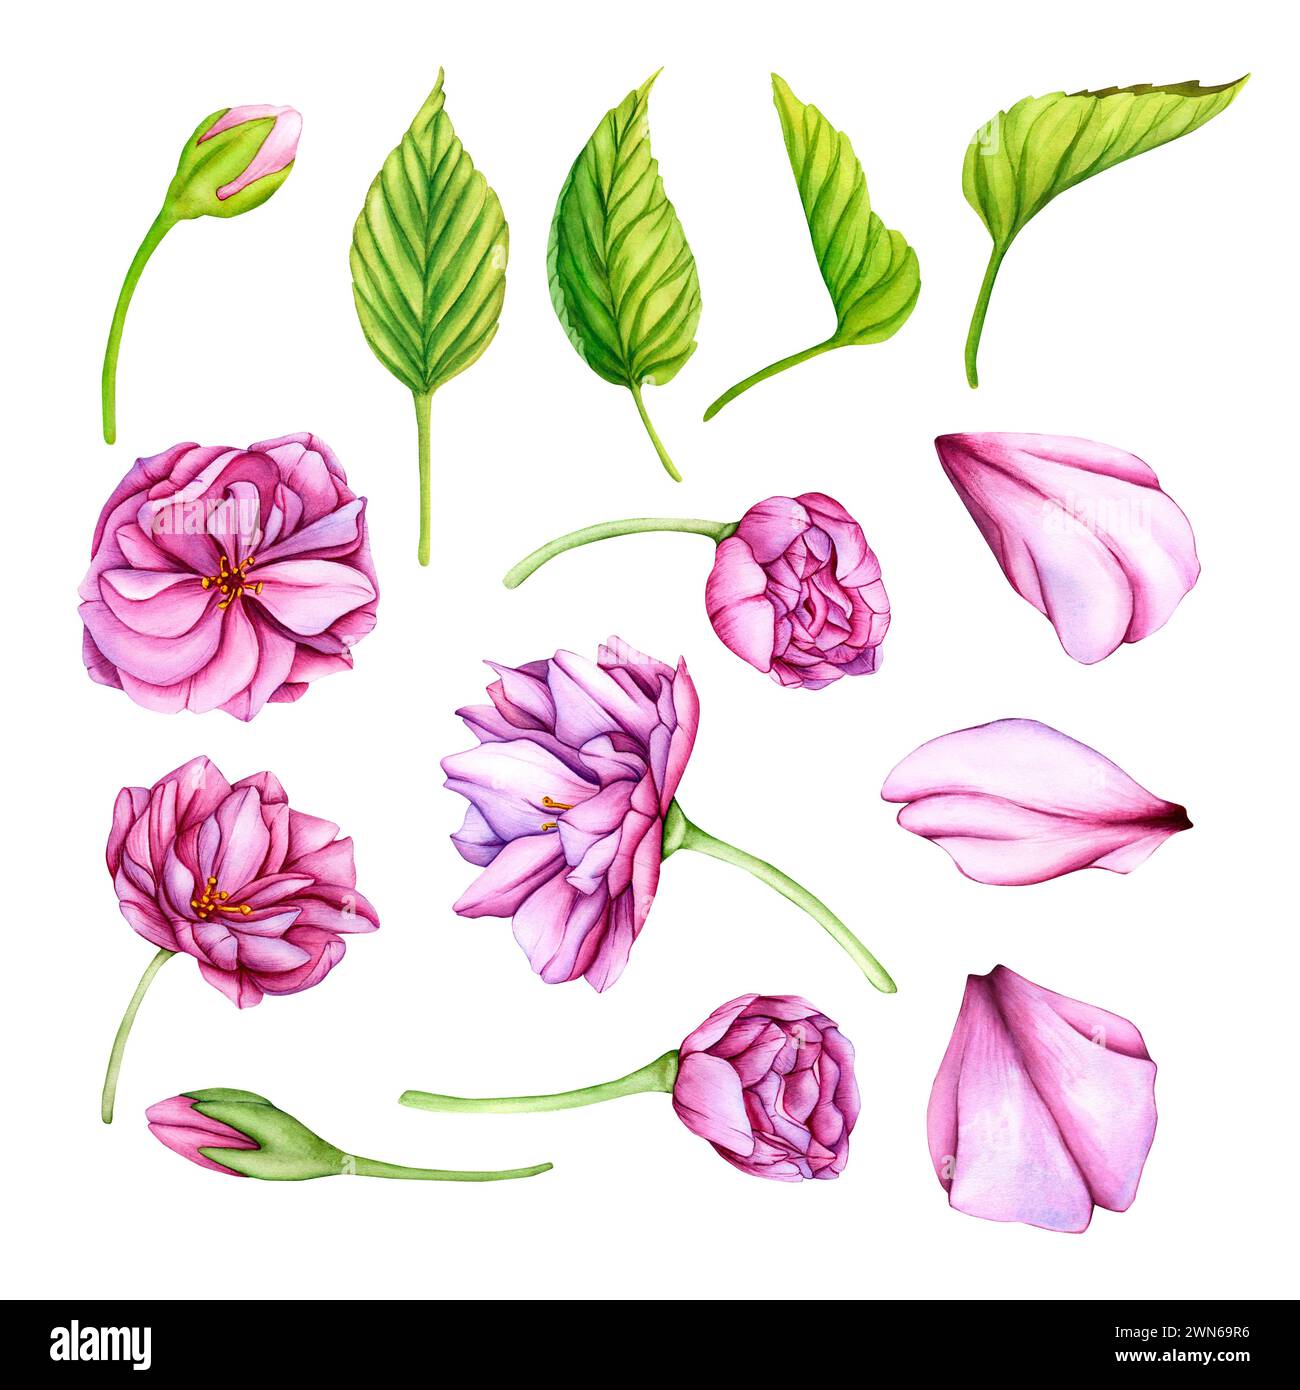 Rosafarbene japanische Sakura-Blüten. Aquarellset der botanischen Illustration. Handgezeichnete Blütenknospen, Blütenblätter und Blätter von Kirschblüten Stockfoto